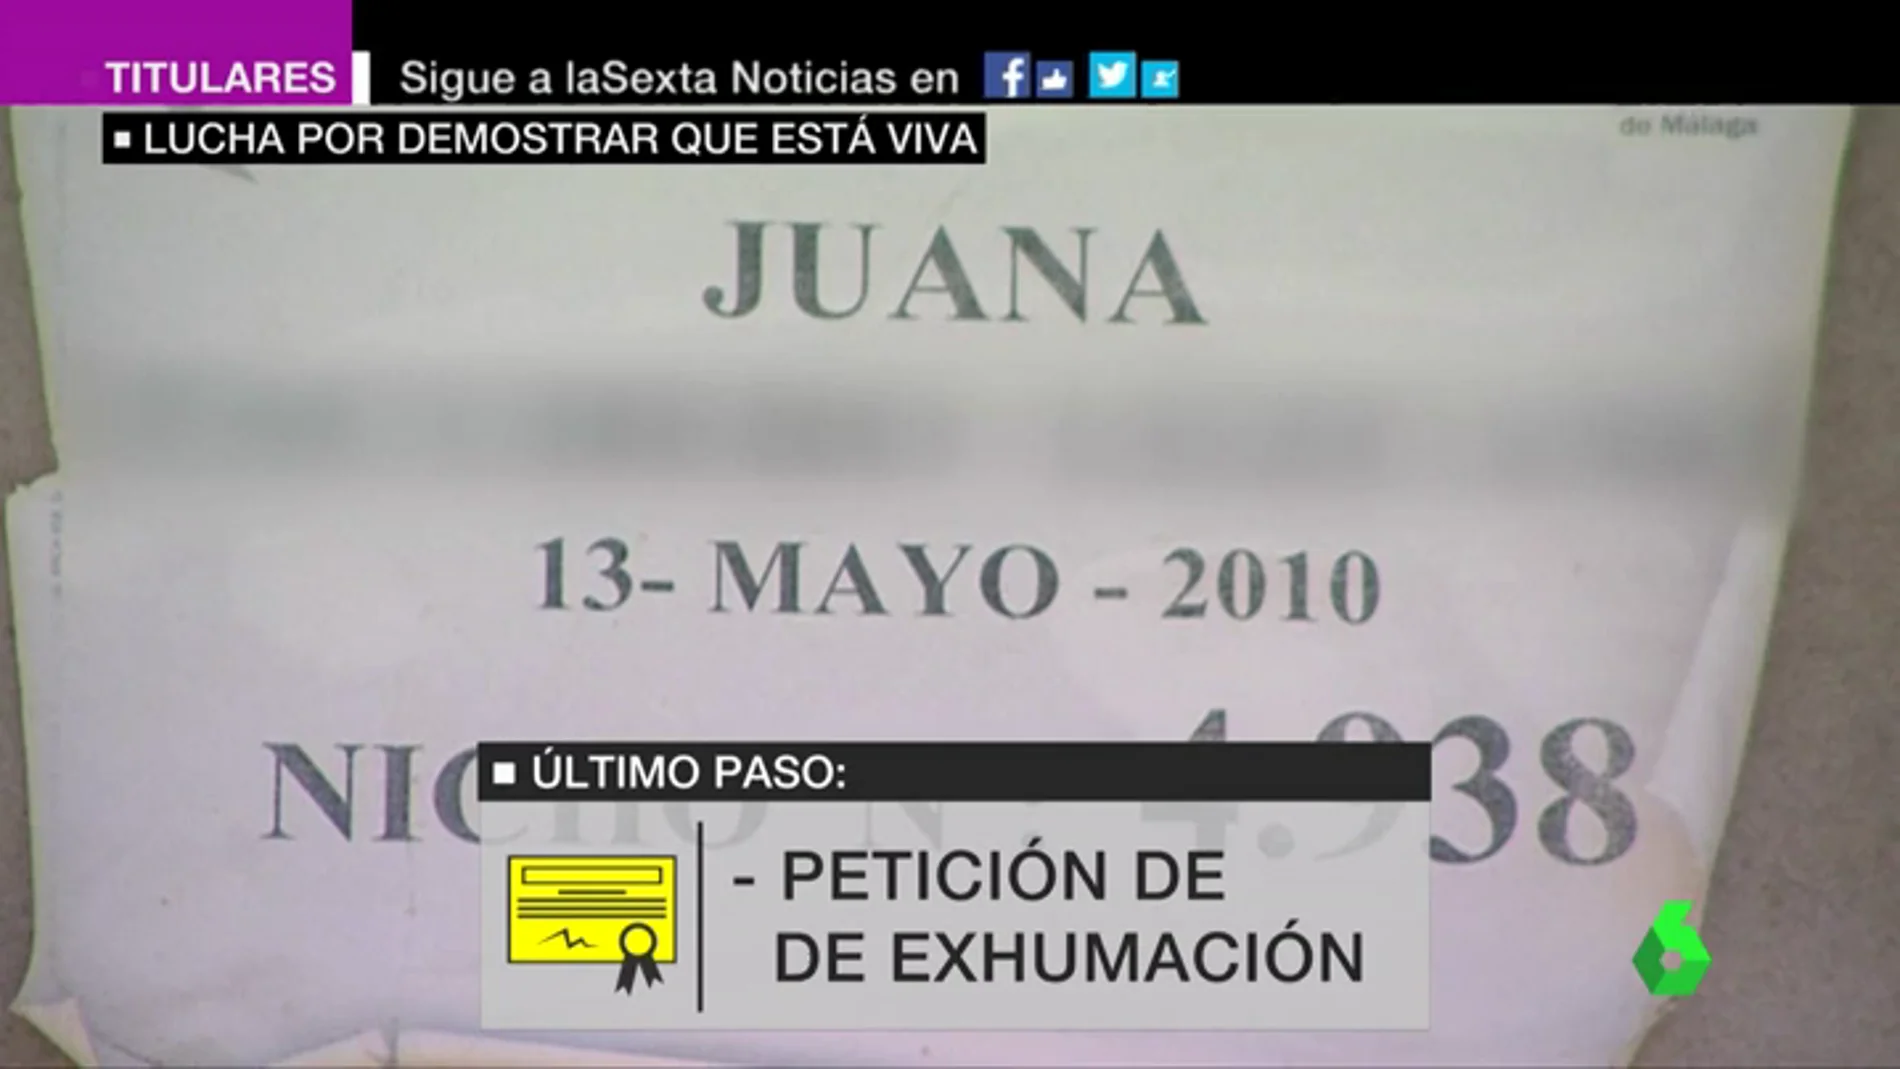 El 'sinvivir' de Juana: la Administración la dio por muerta en 2010 y ahora lucha por demostrar que está viva